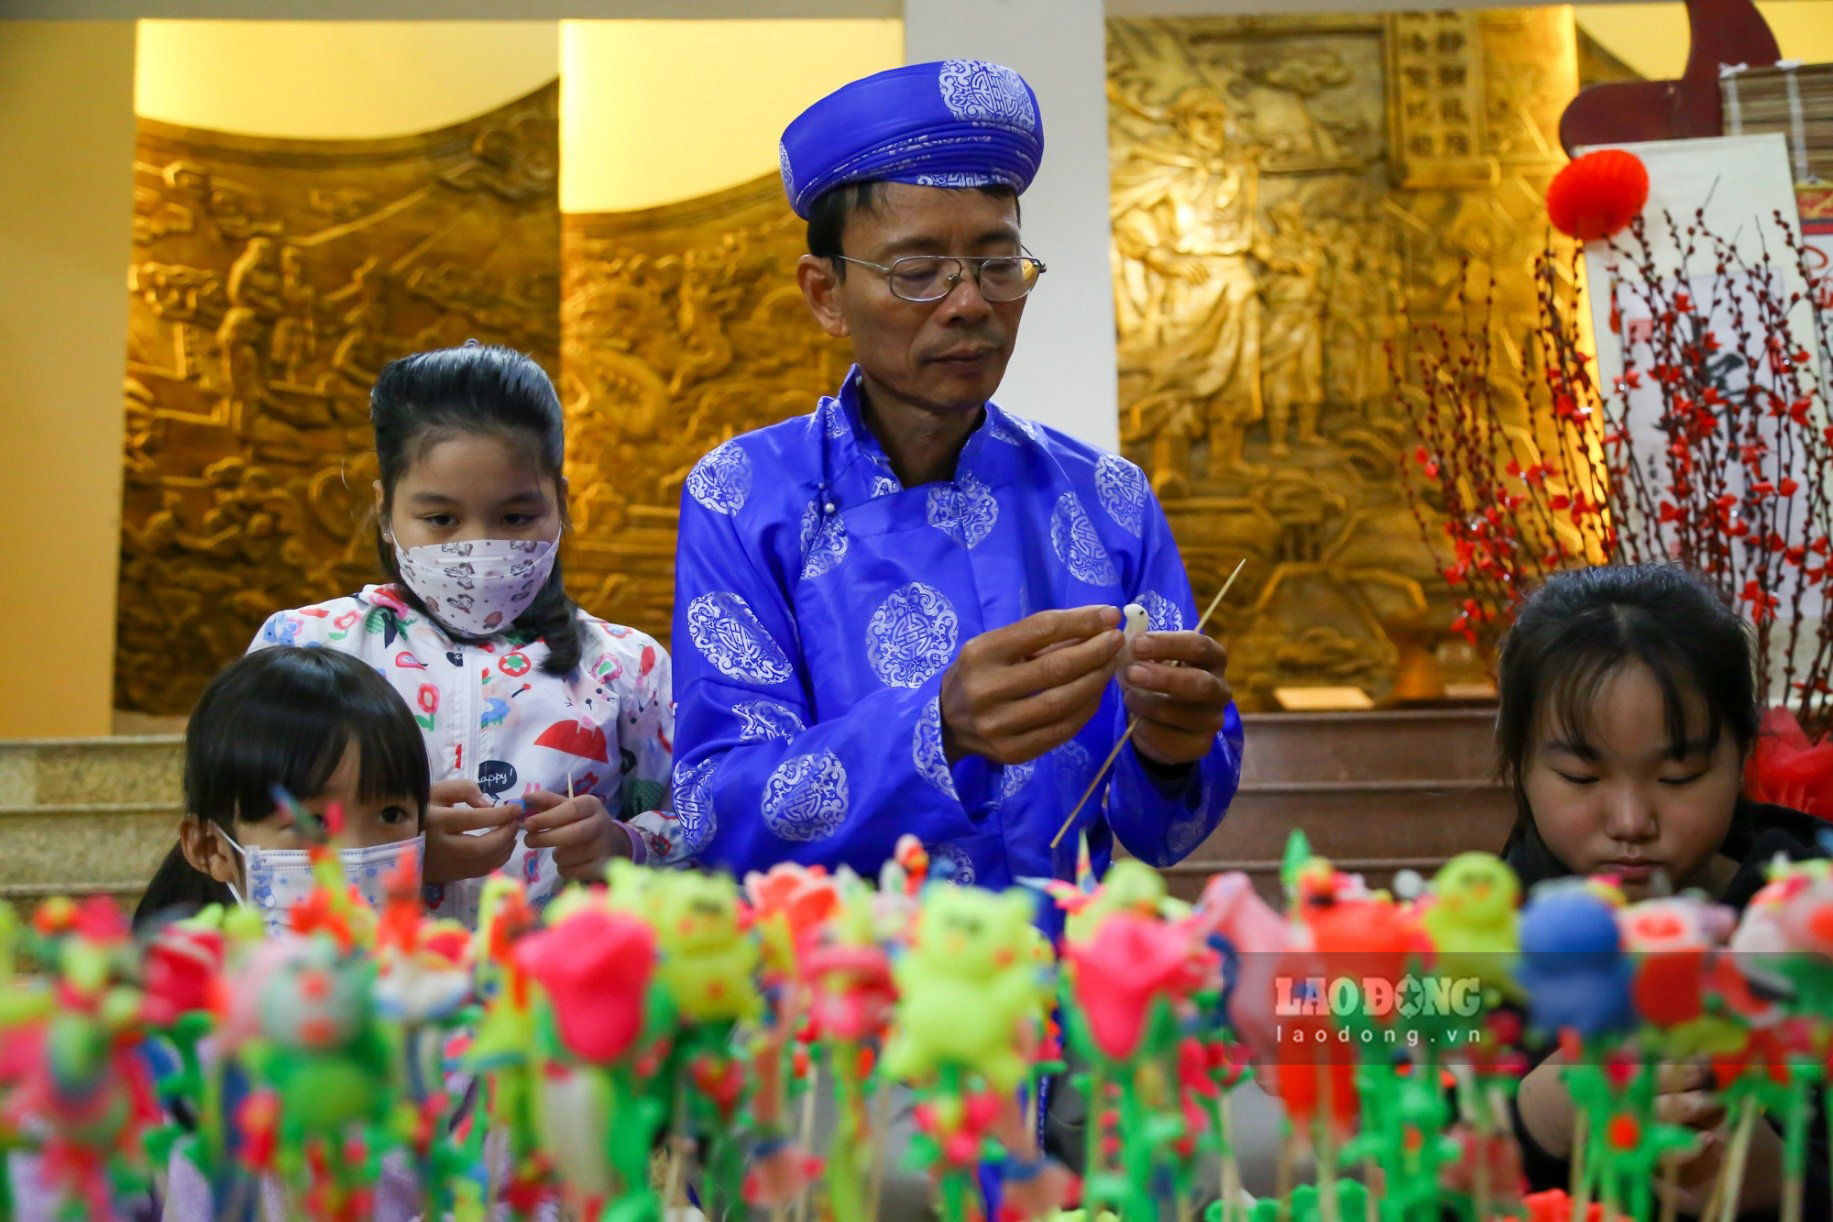 Dịp này, các em nhỏ được người lớn đưa đến trải nghiệm các hoạt động ,trò chơi truyền thống để hiểu thêm giá trị của ngày Tết cổ truyền Việt Nam.